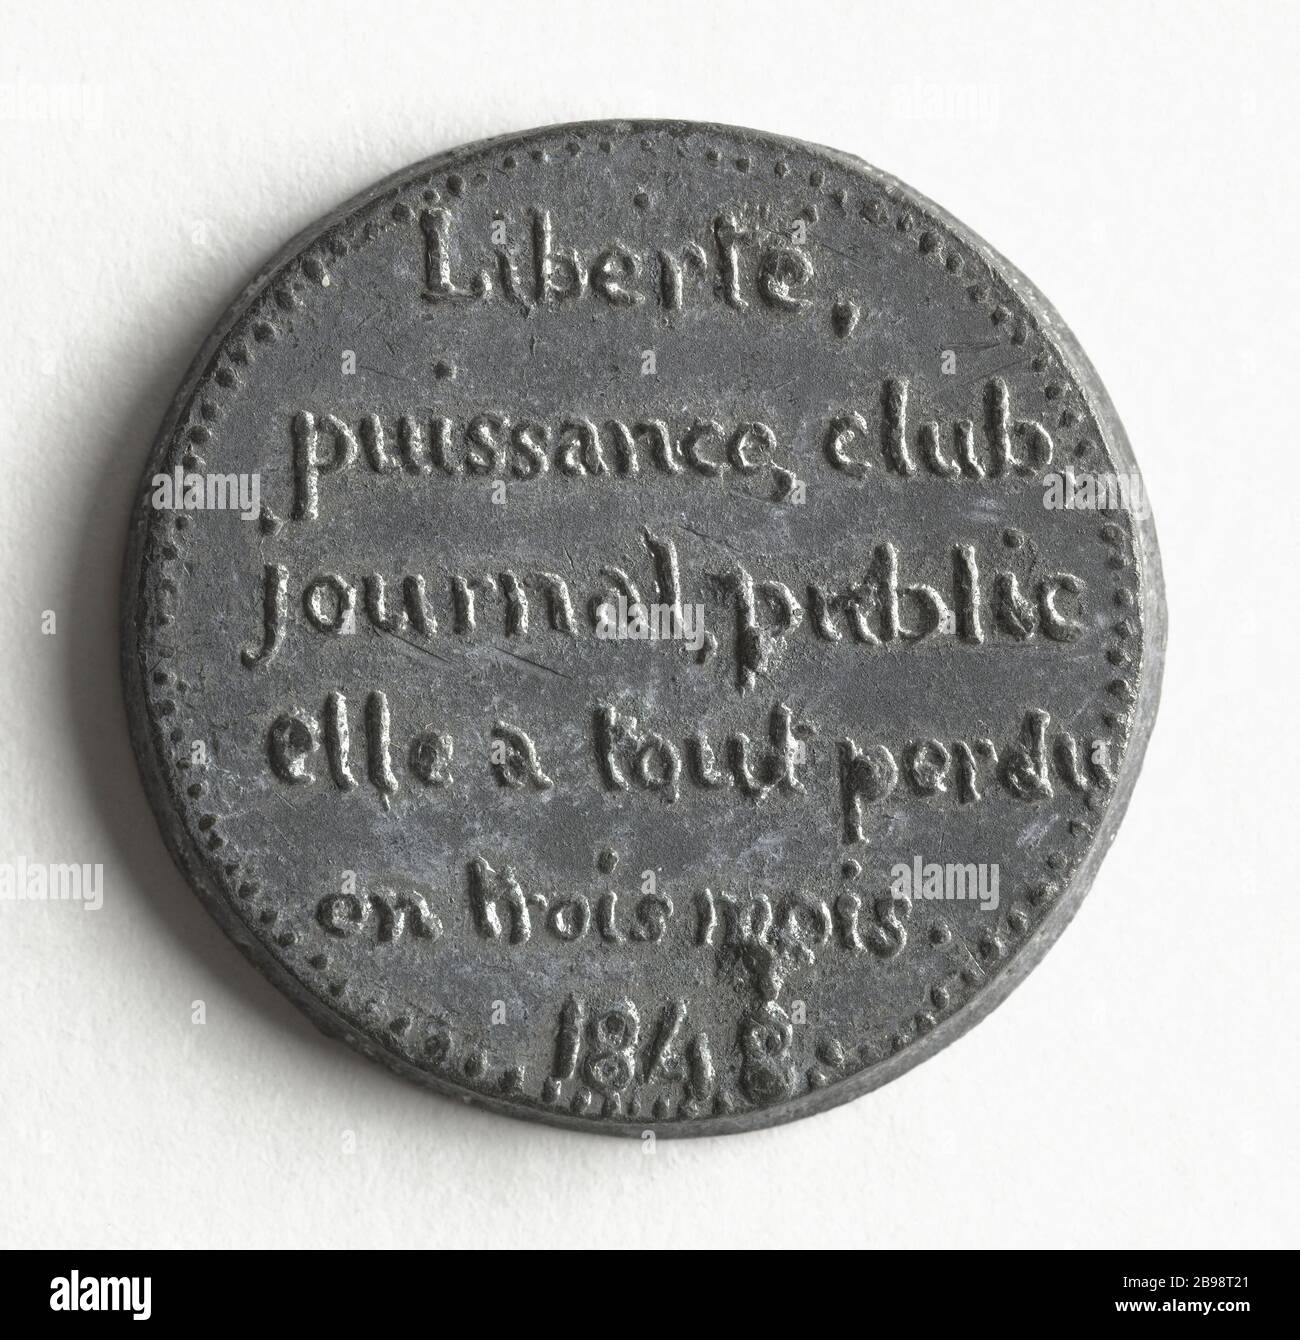 women's rights Degradation, 1848 (dummy Title) Médaille. Dégradation des droits des femmes. Cuivre blanc, 1848. Paris, musée Carnavalet. Stock Photo